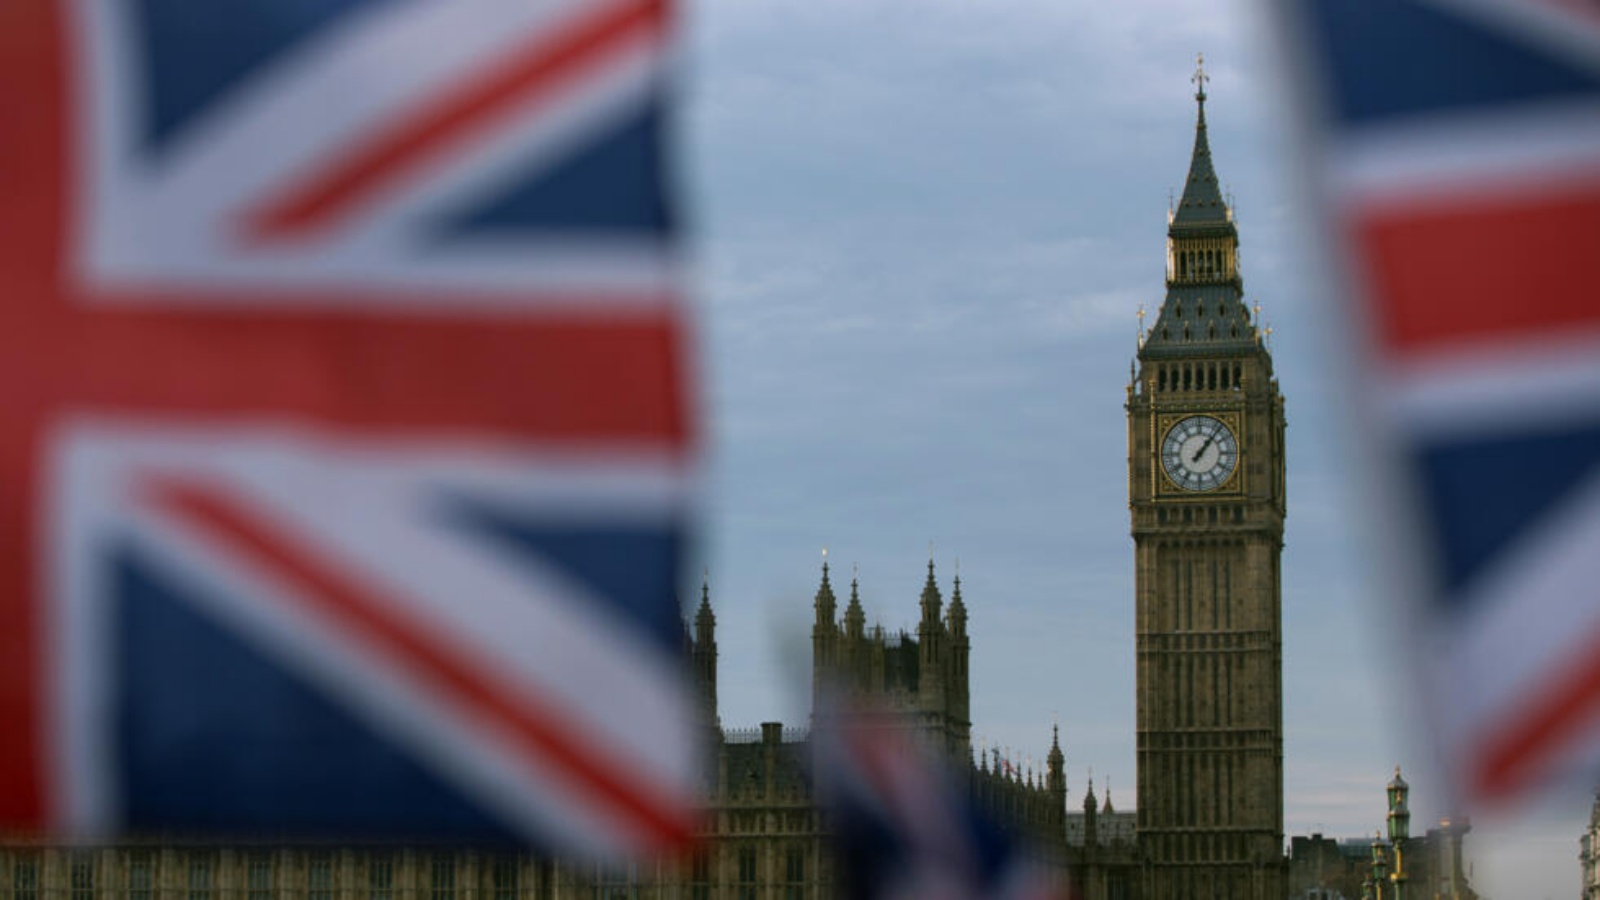 العلم البريطاني مرفرفا قرب ساعة بيغ بن في لندن في 7 كانون الأول/ديسمبر 2016 العلم البريطاني مرفرفا قرب ساعة بيغ بن في لندن في 7 كانون الأول (ديسمبر) 2016